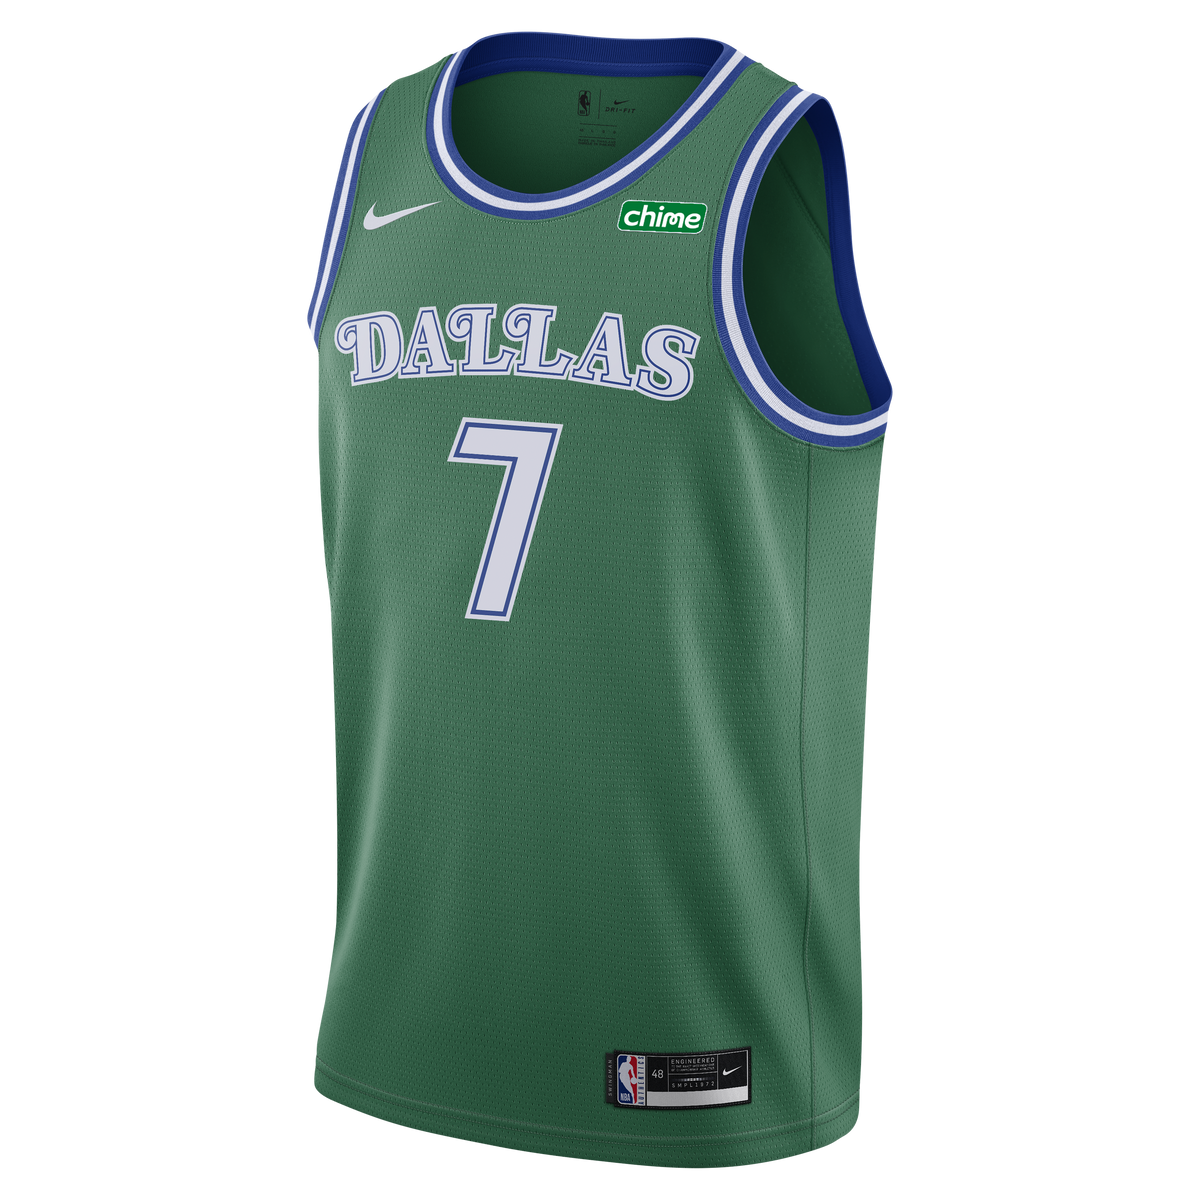 Dallas Mavericks Jerseys & Gear.